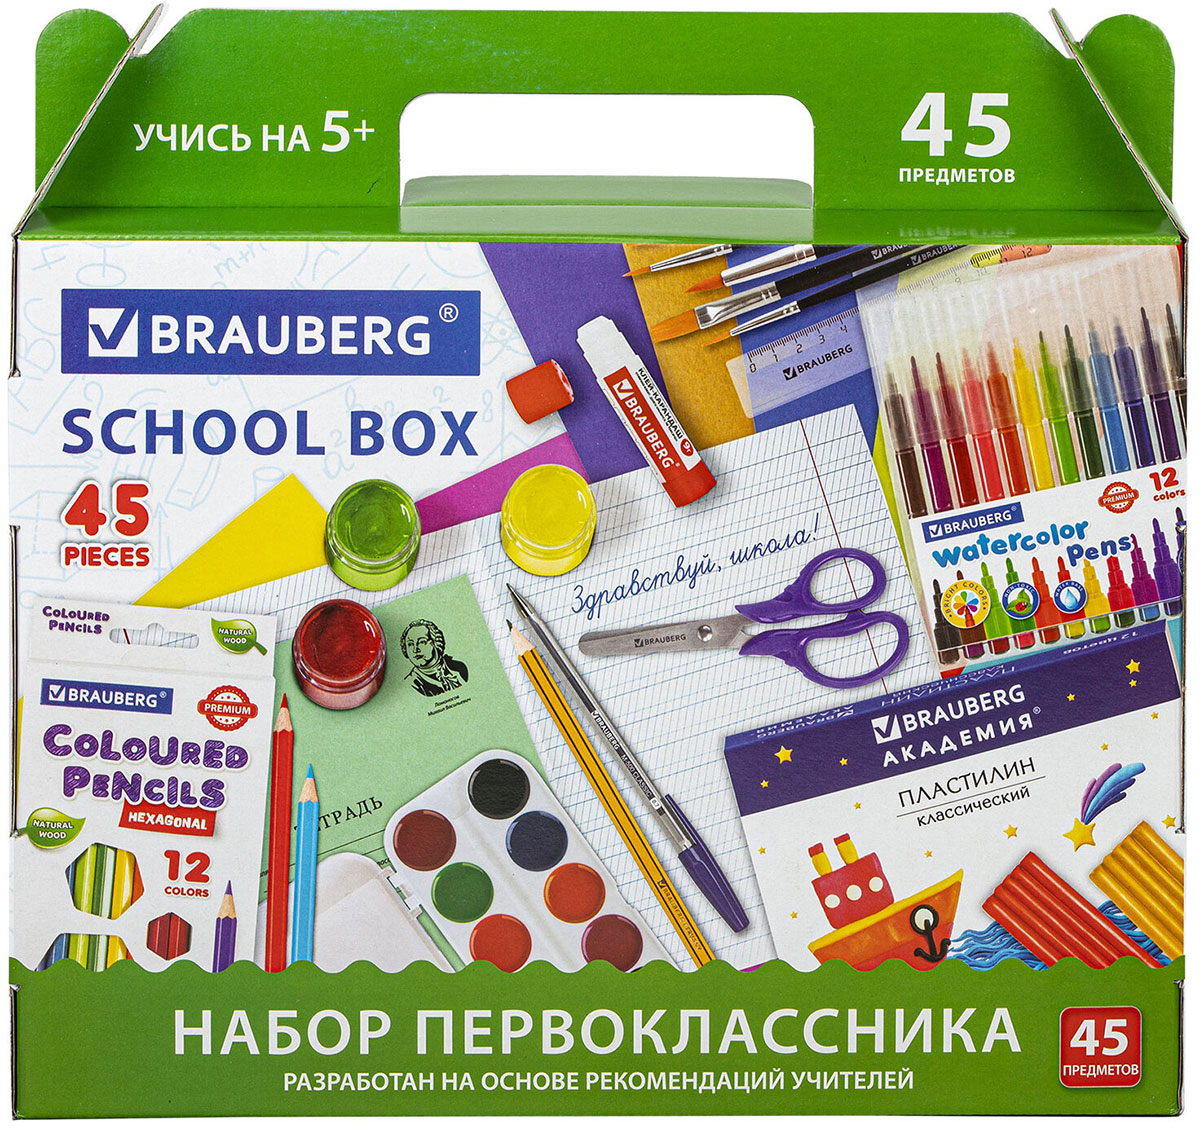 Набор школьных принадлежностей Brauberg в подарочной коробке, ПЕРВОКЛАССНИК, 45 предметов (880122) цена и фото